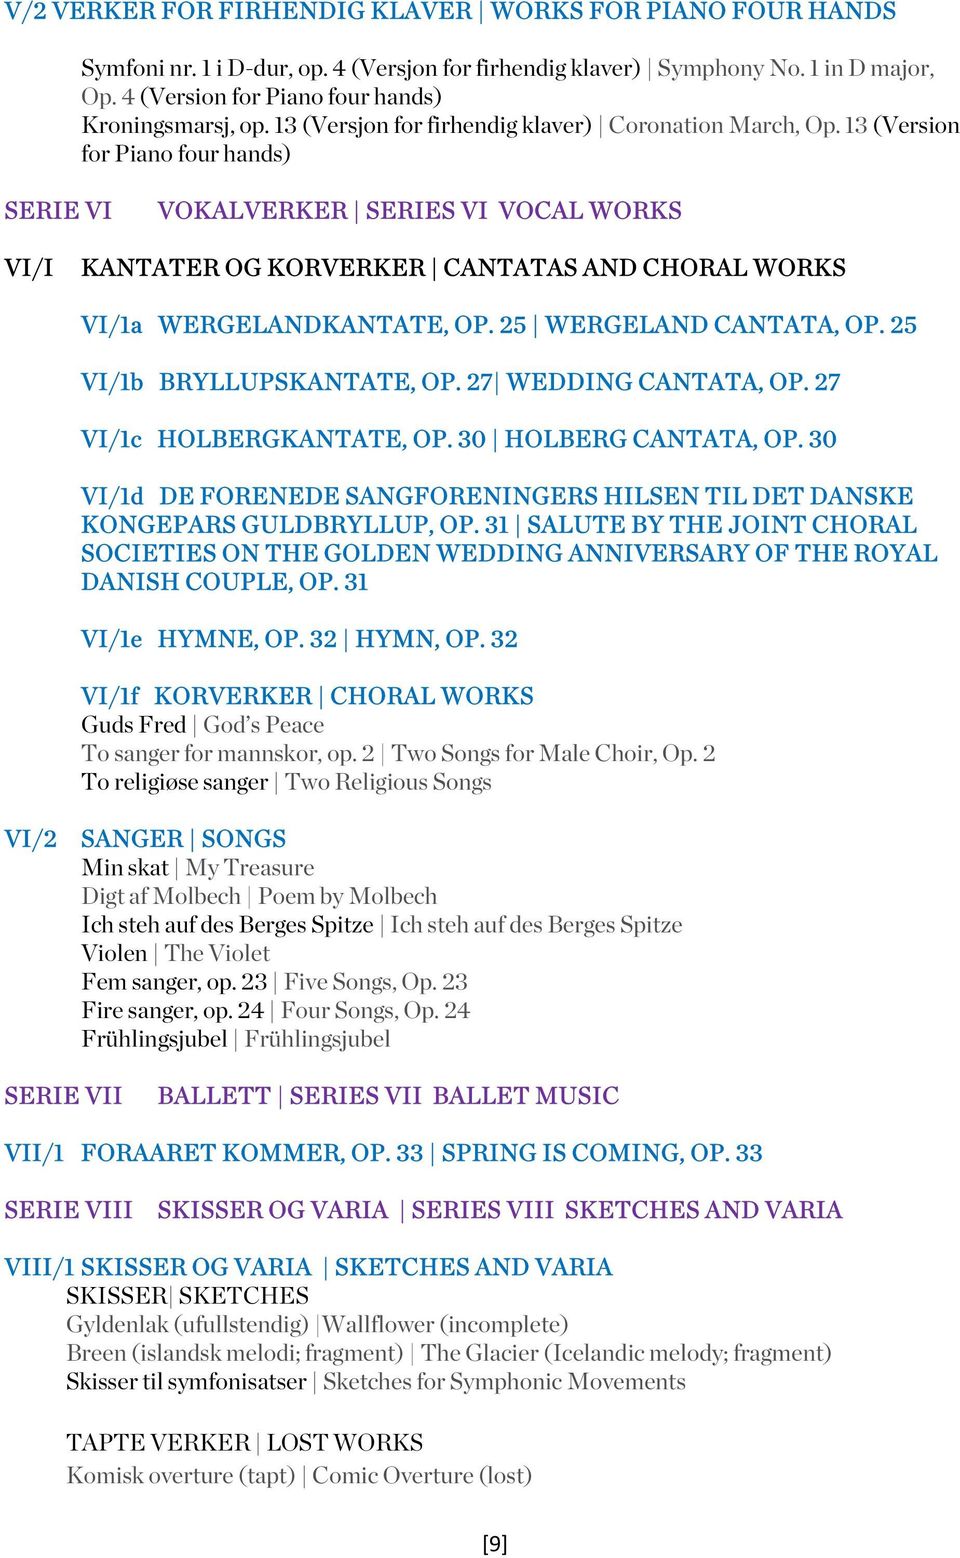 13 (Version for Piano four hands) SERIE VI VOKALVERKER SERIES VI VOCAL WORKS VI/I KANTATER OG KORVERKER CANTATAS AND CHORAL WORKS VI/1a WERGELANDKANTATE, OP. 25 WERGELAND CANTATA, OP.